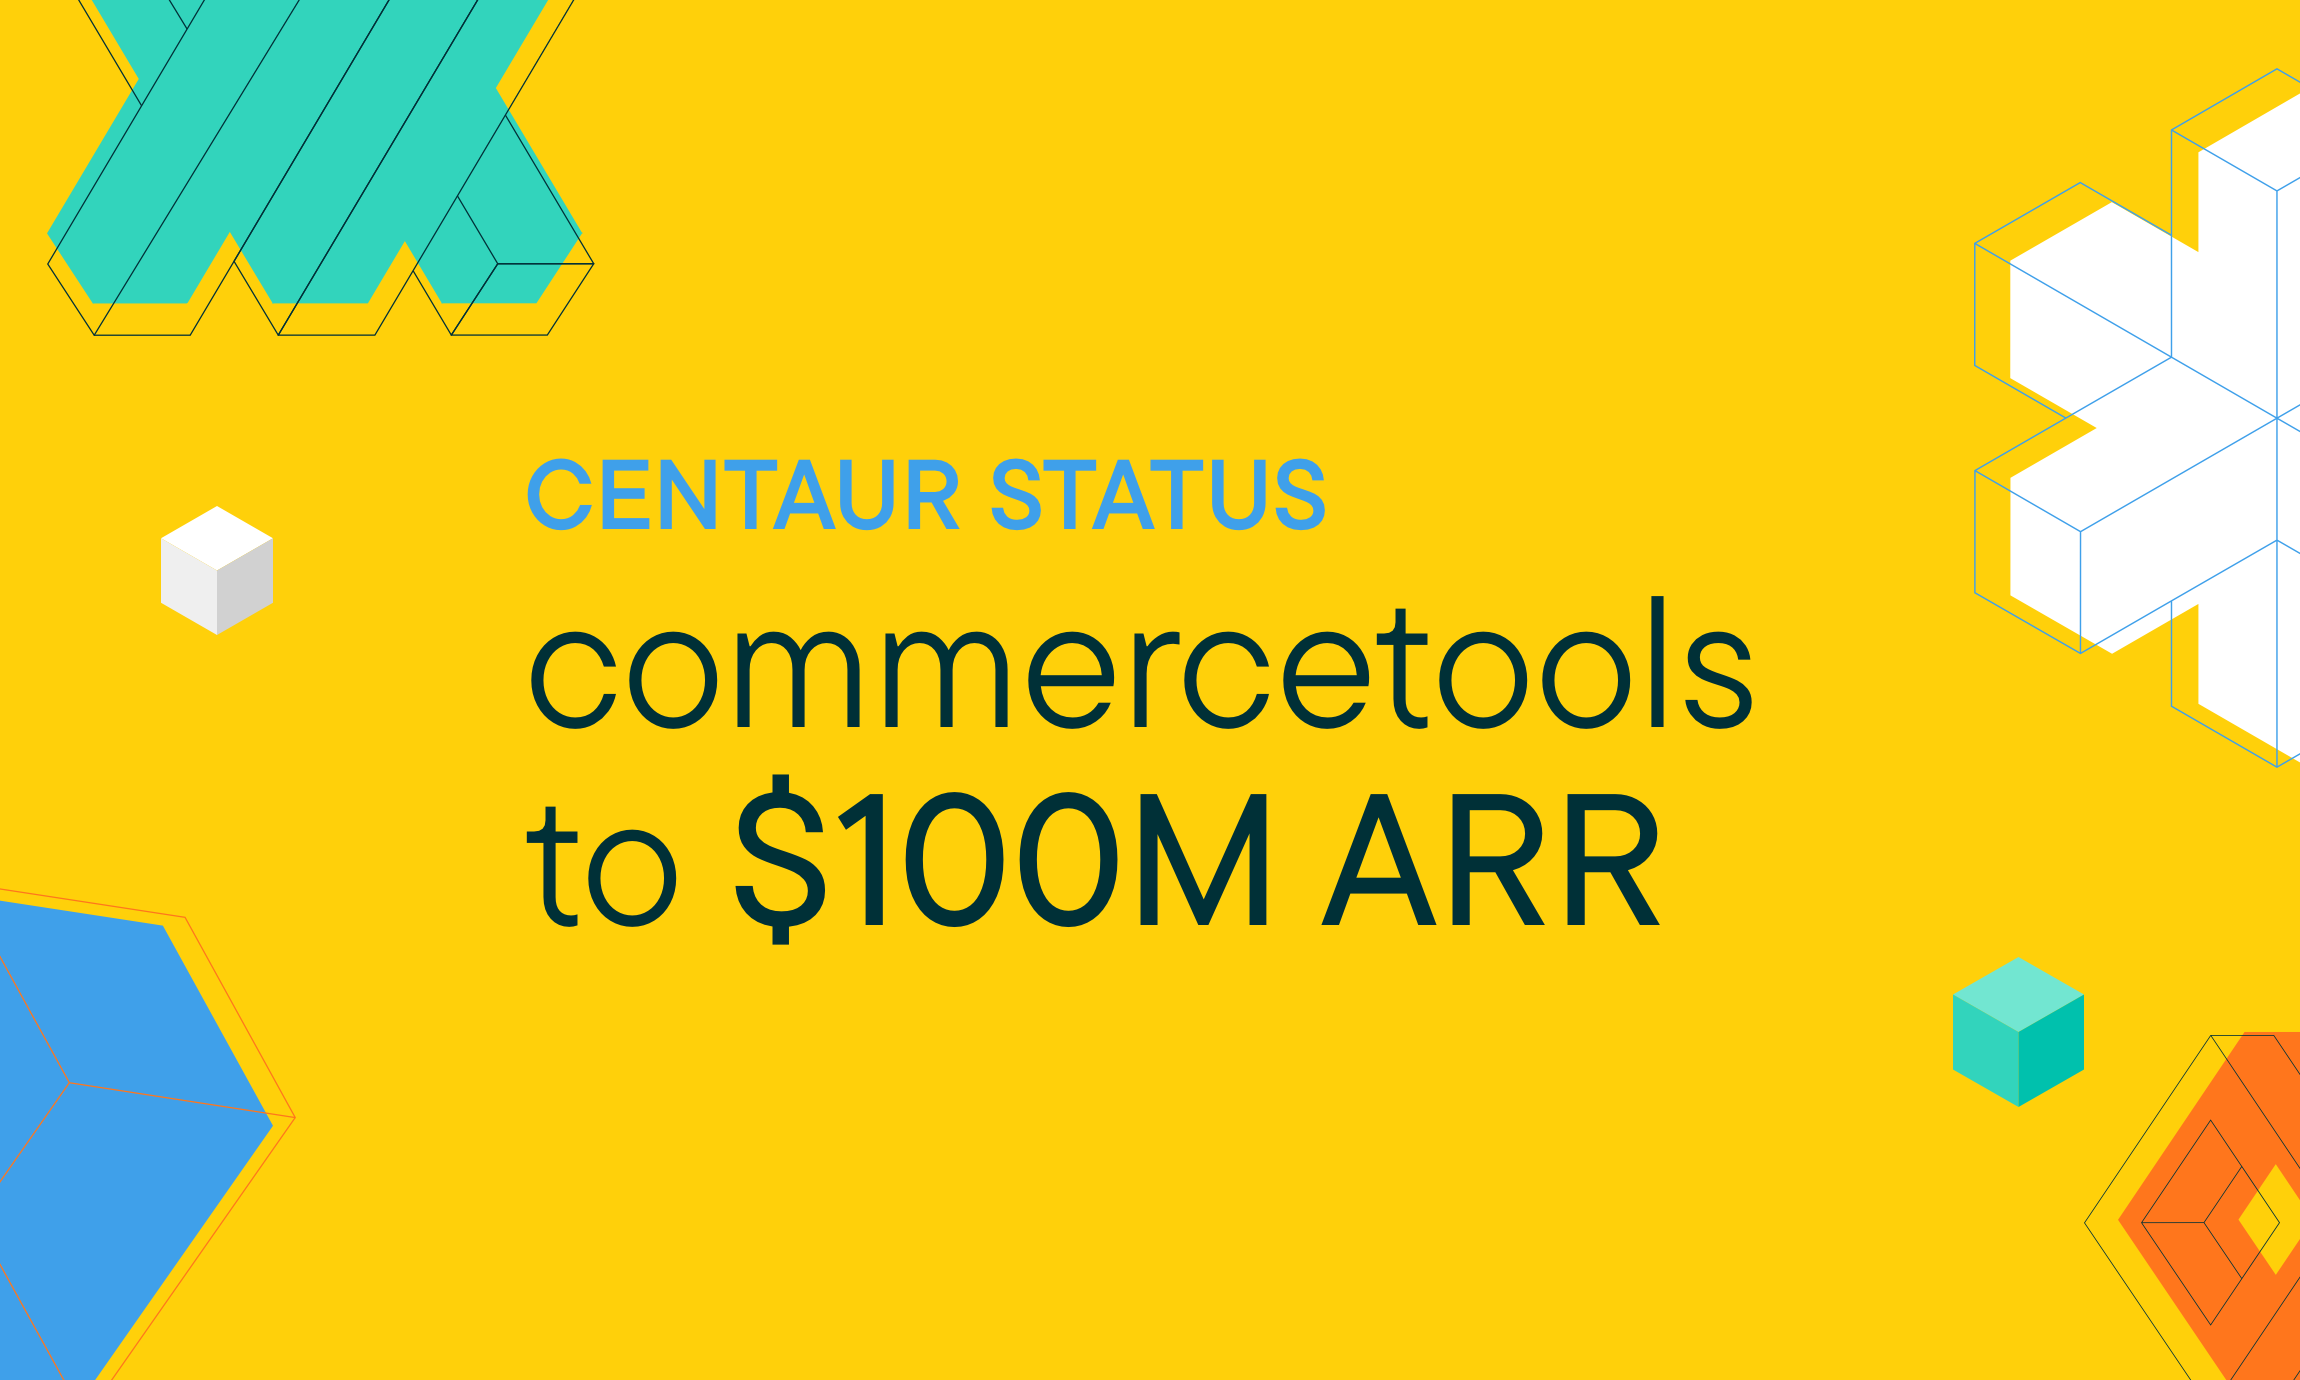 commercetools Achieves Centaur Status Surpassing the $100M Live ARR Milestone